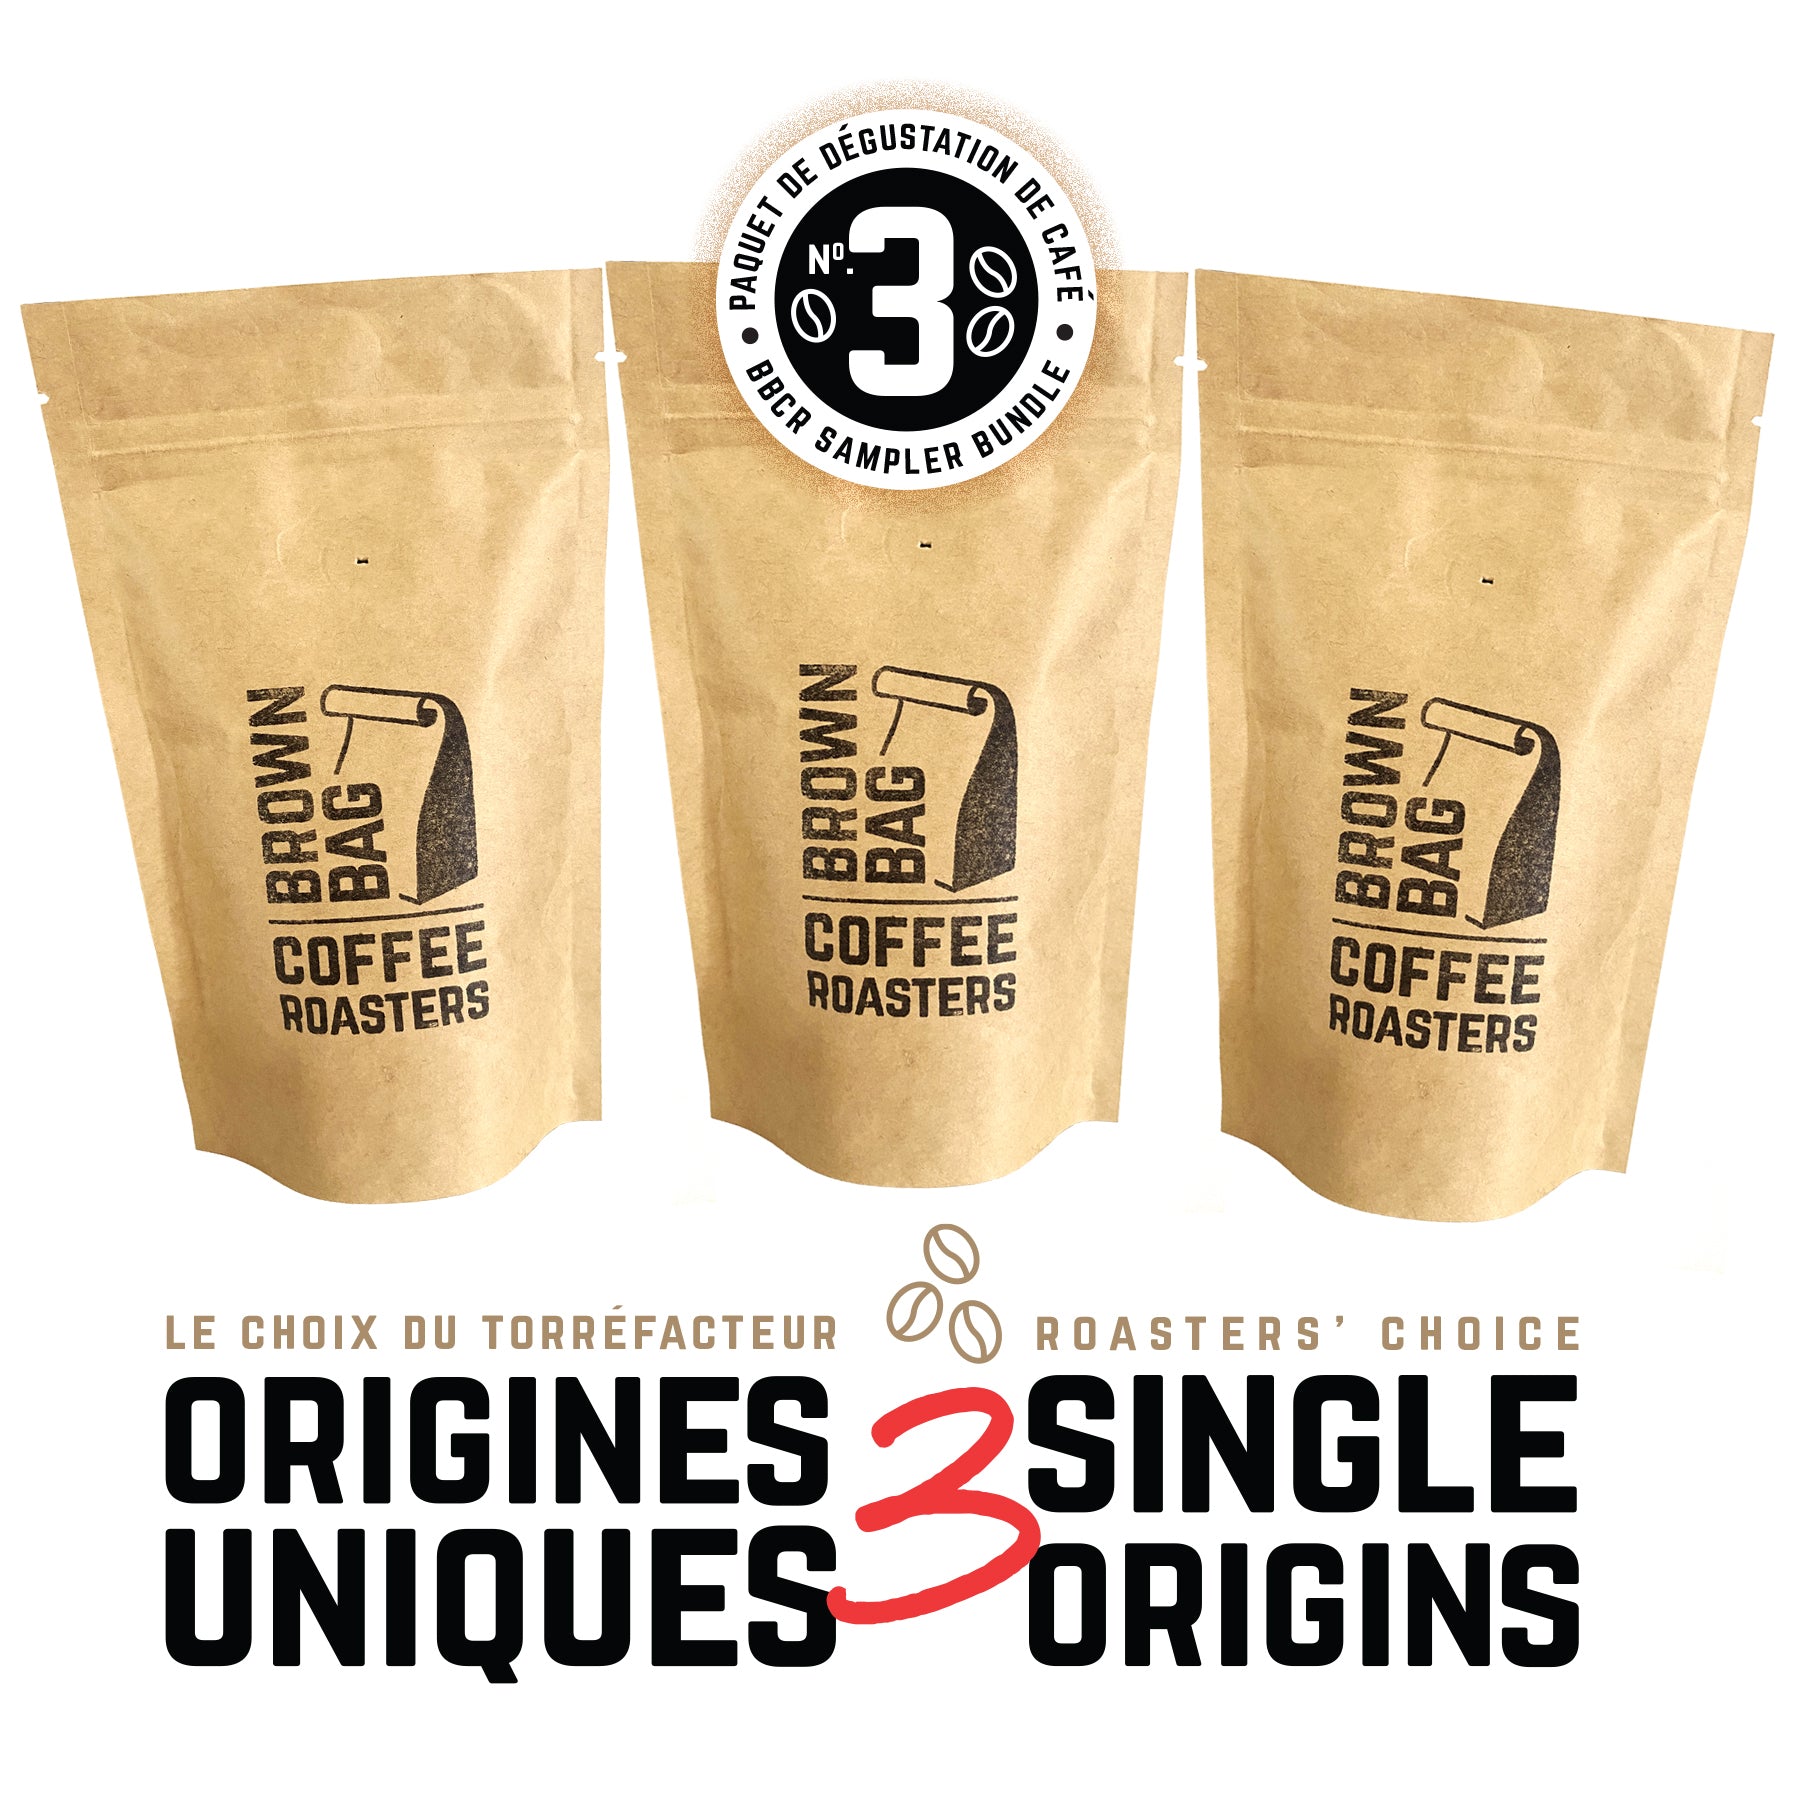 No.3 BBCR sampler bundle | Le no.3 paquet de dégustation de café